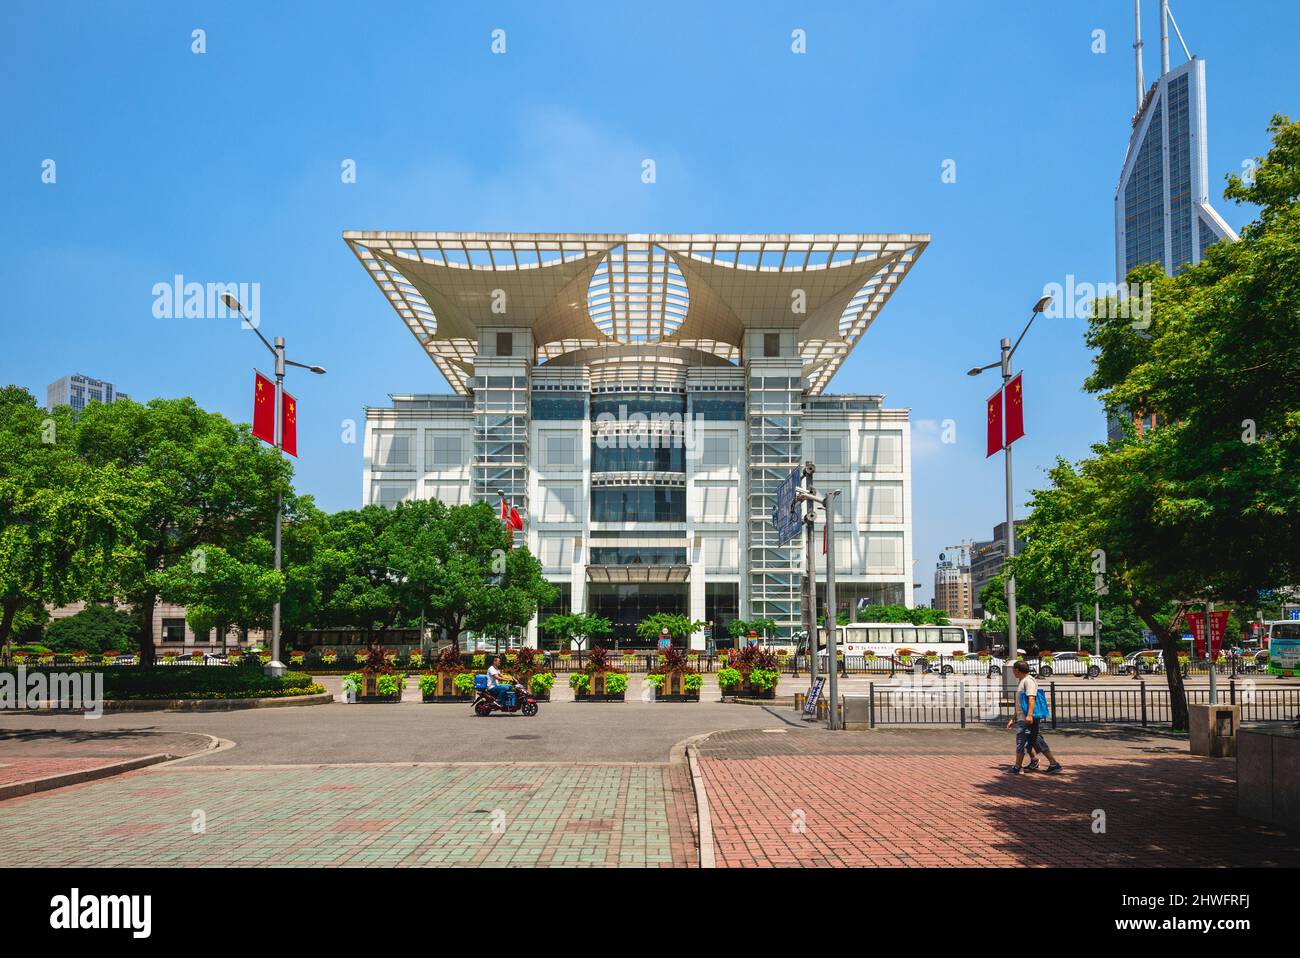 27 luglio 2018: Shanghai Urban Planning Exhibition Center, situato in Piazza dei popoli a Shanghai, Cina. E' un edificio a sei piani che mostra Shan Foto Stock